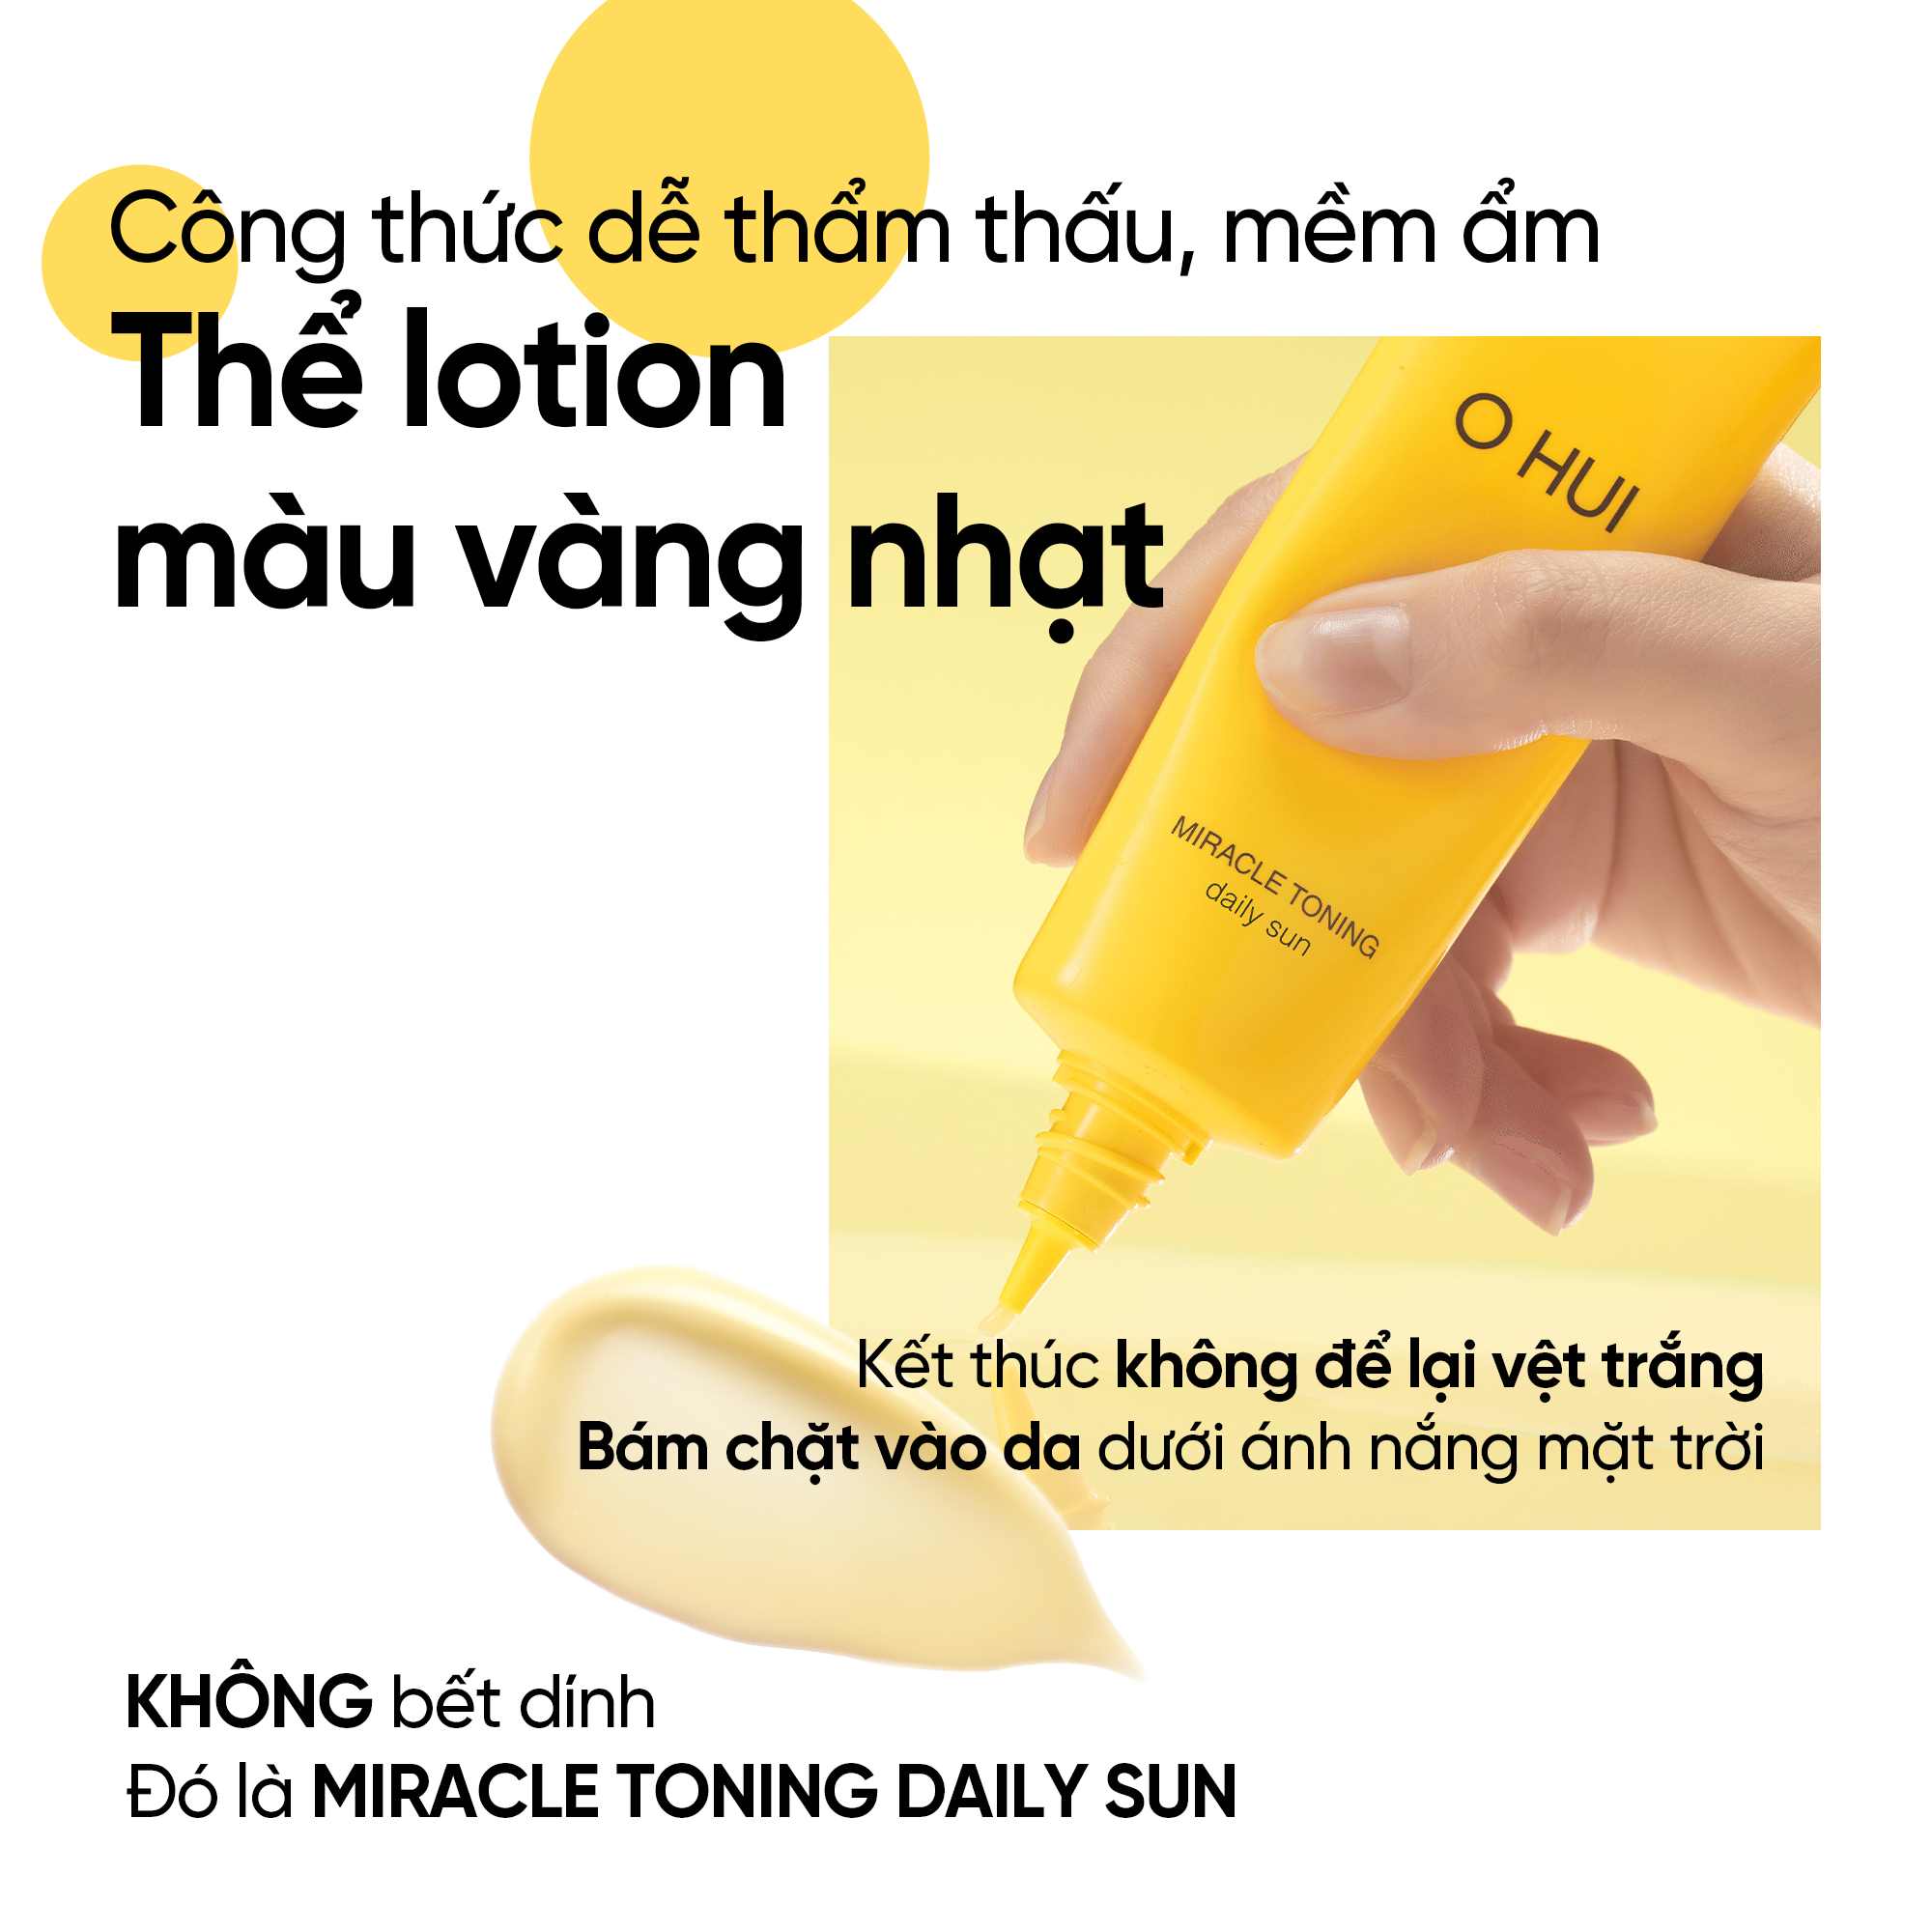  Bộ kem chống nắng cấp ẩm dưỡng da đa chức năng OHUI Miracle Toning Daily Sun SPF50+/PA+++ 50ML